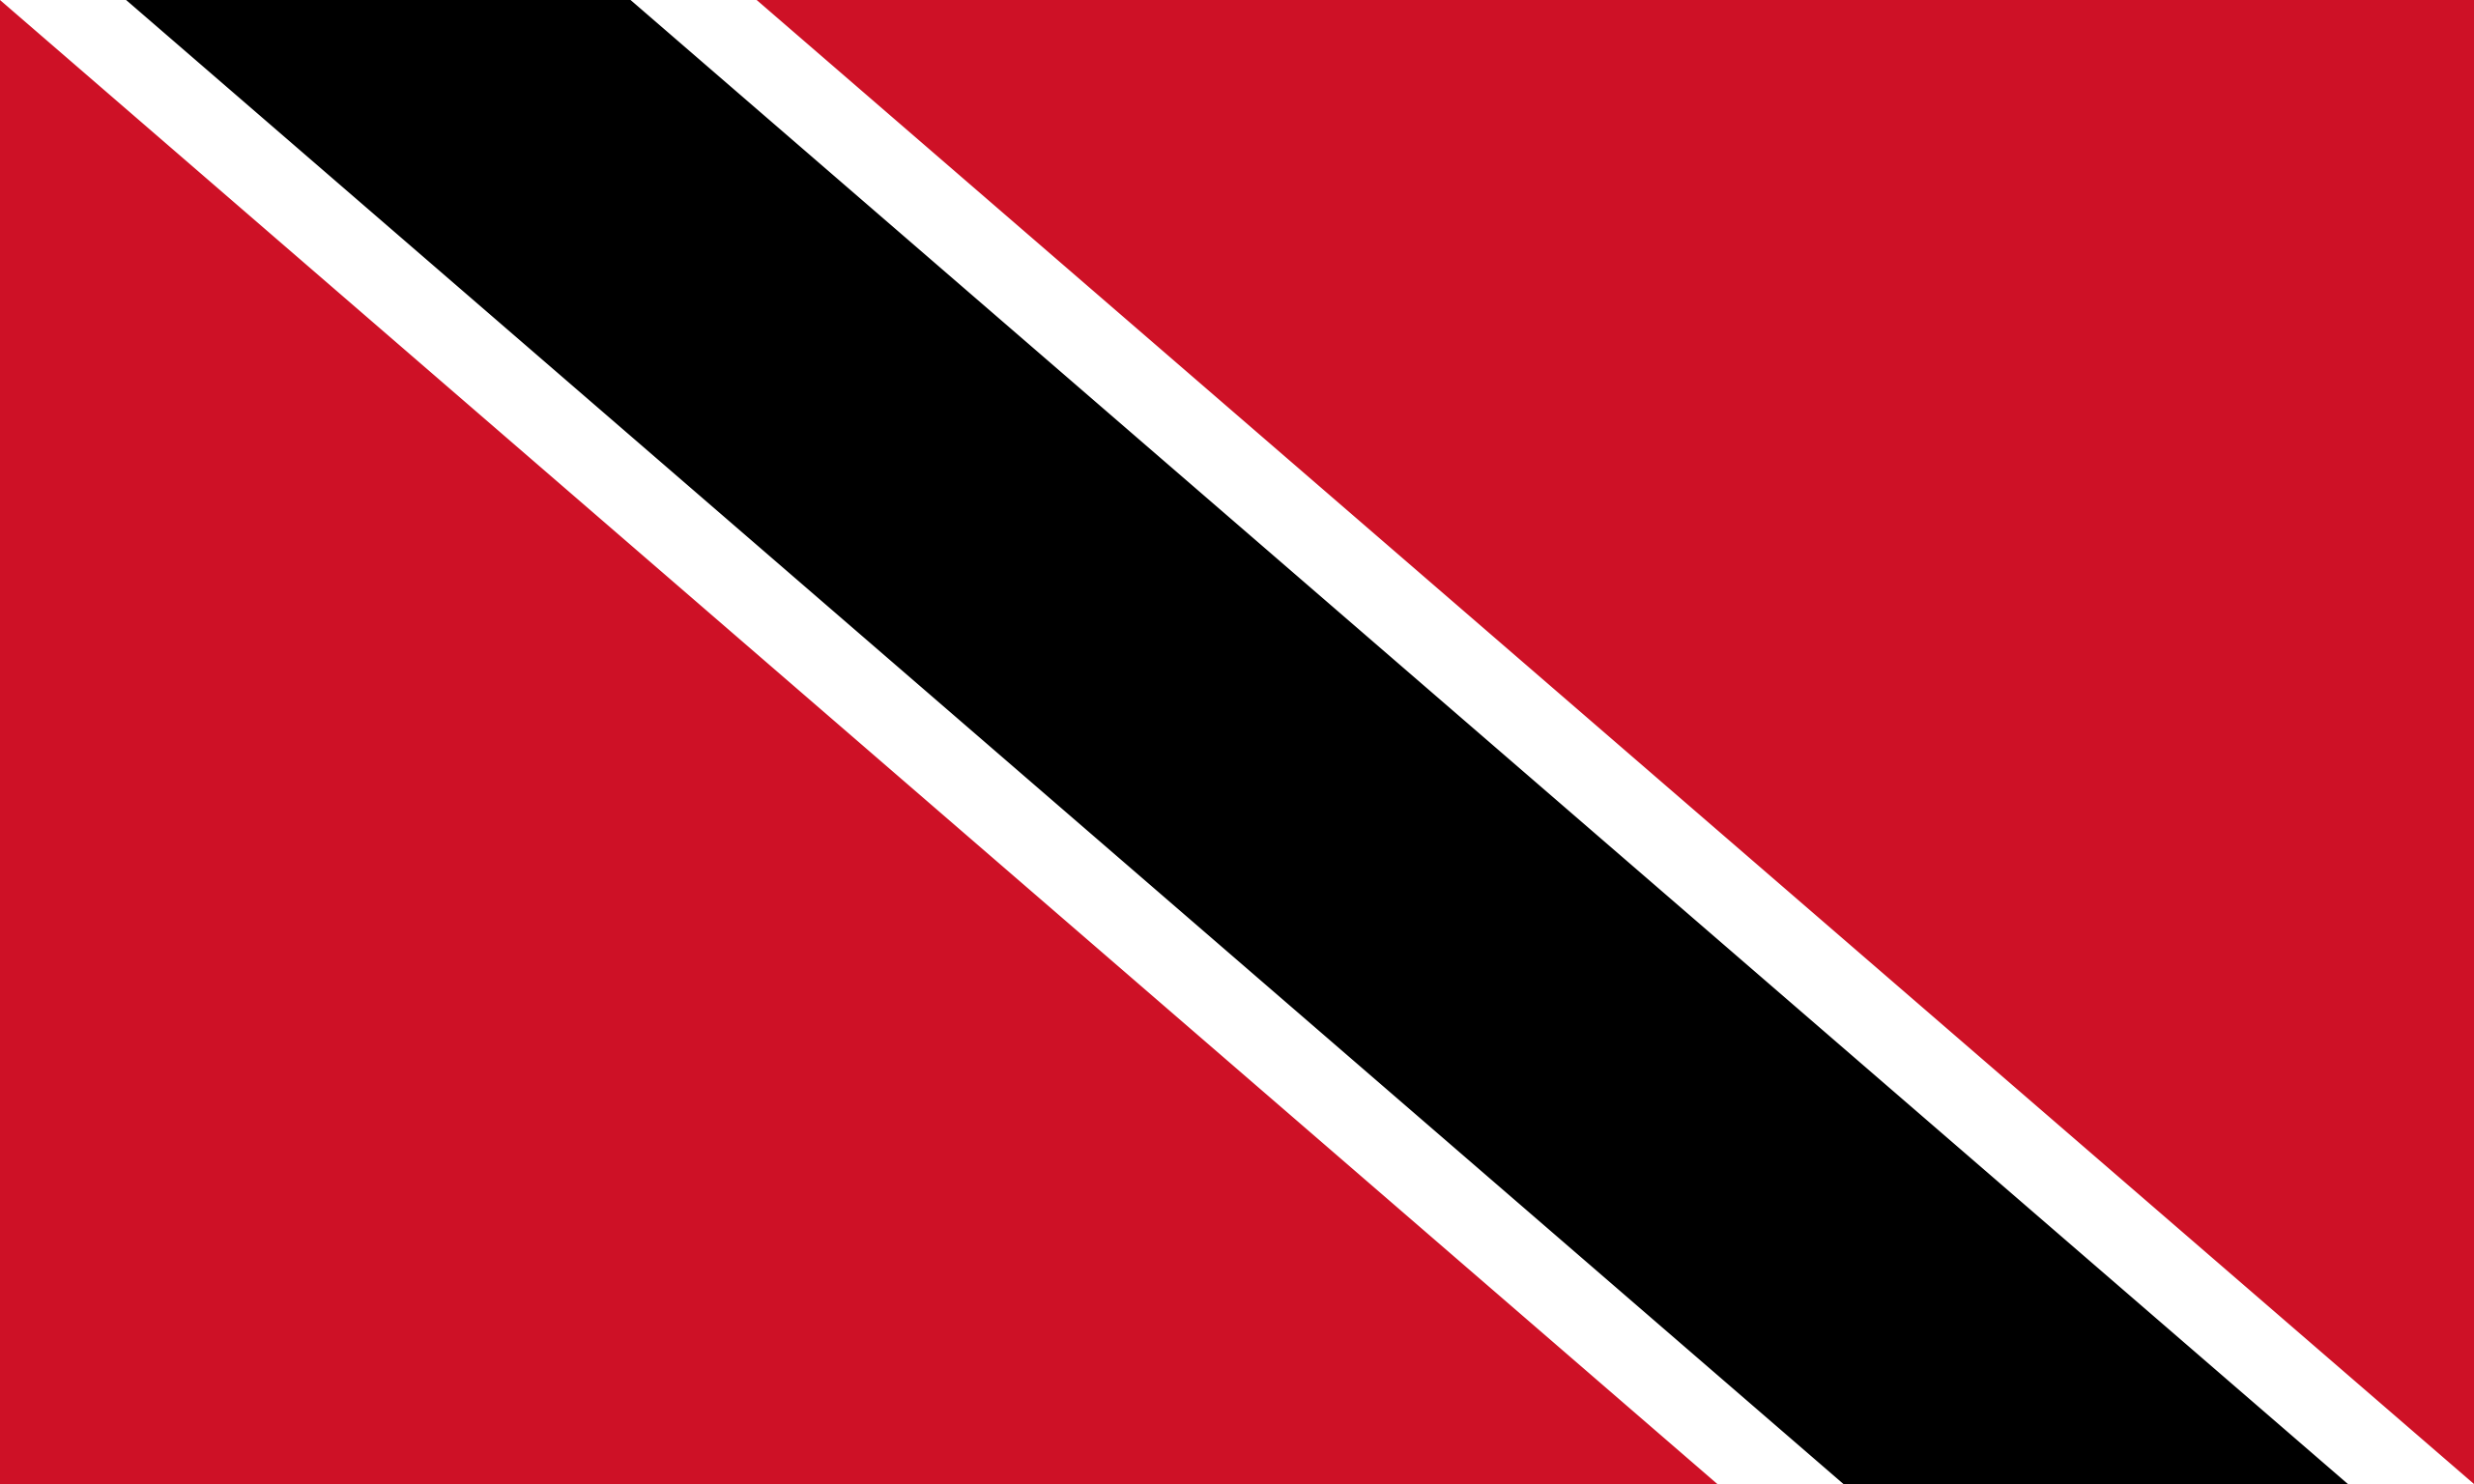     Football : la FIFA lève la suspension de Trinidad-et-Tobago

